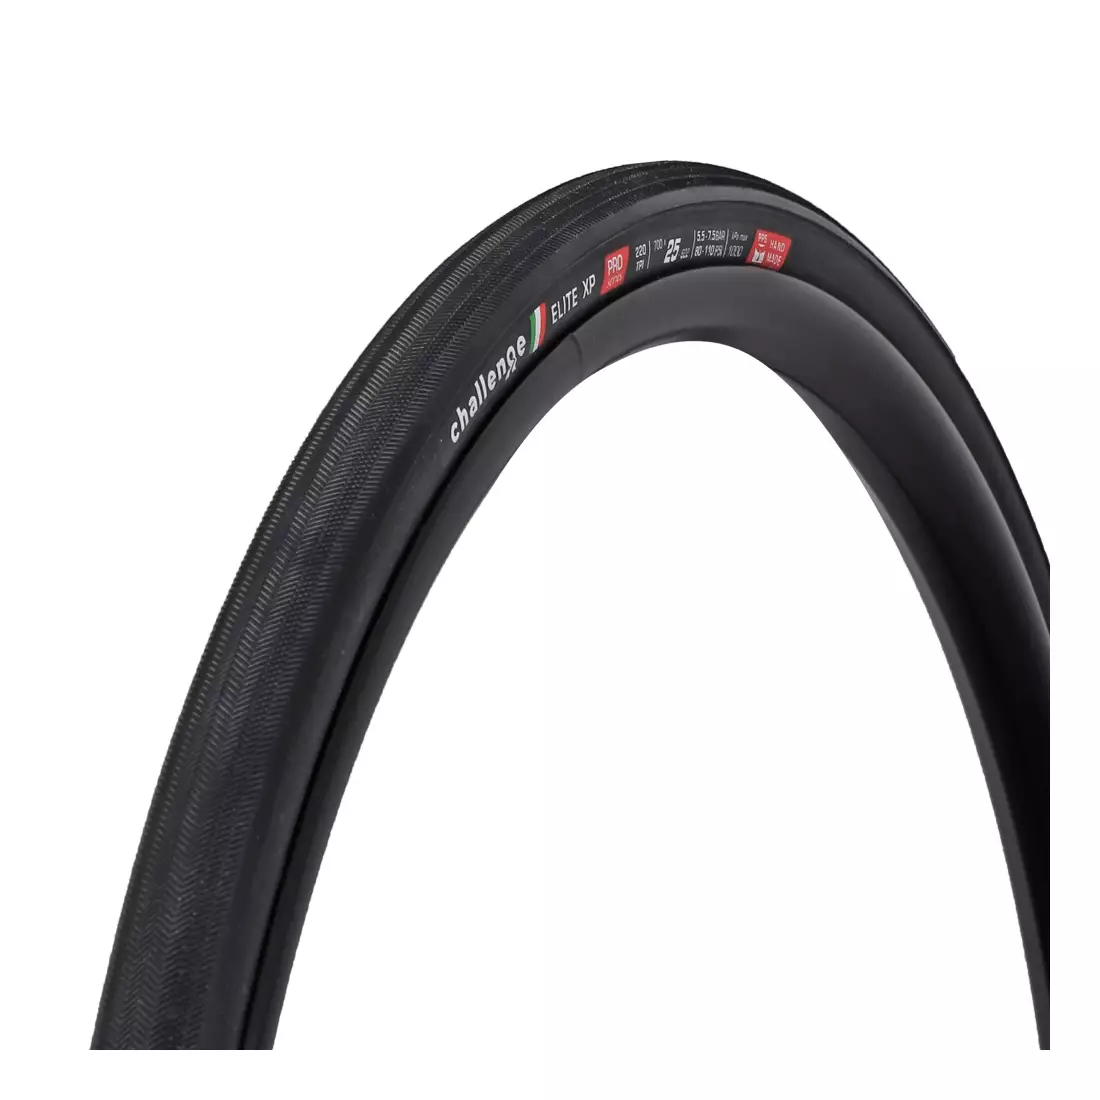 CHALLENGE ELITE XP országúti kerékpár gumi (700x25mm), 220 TPI, fekete